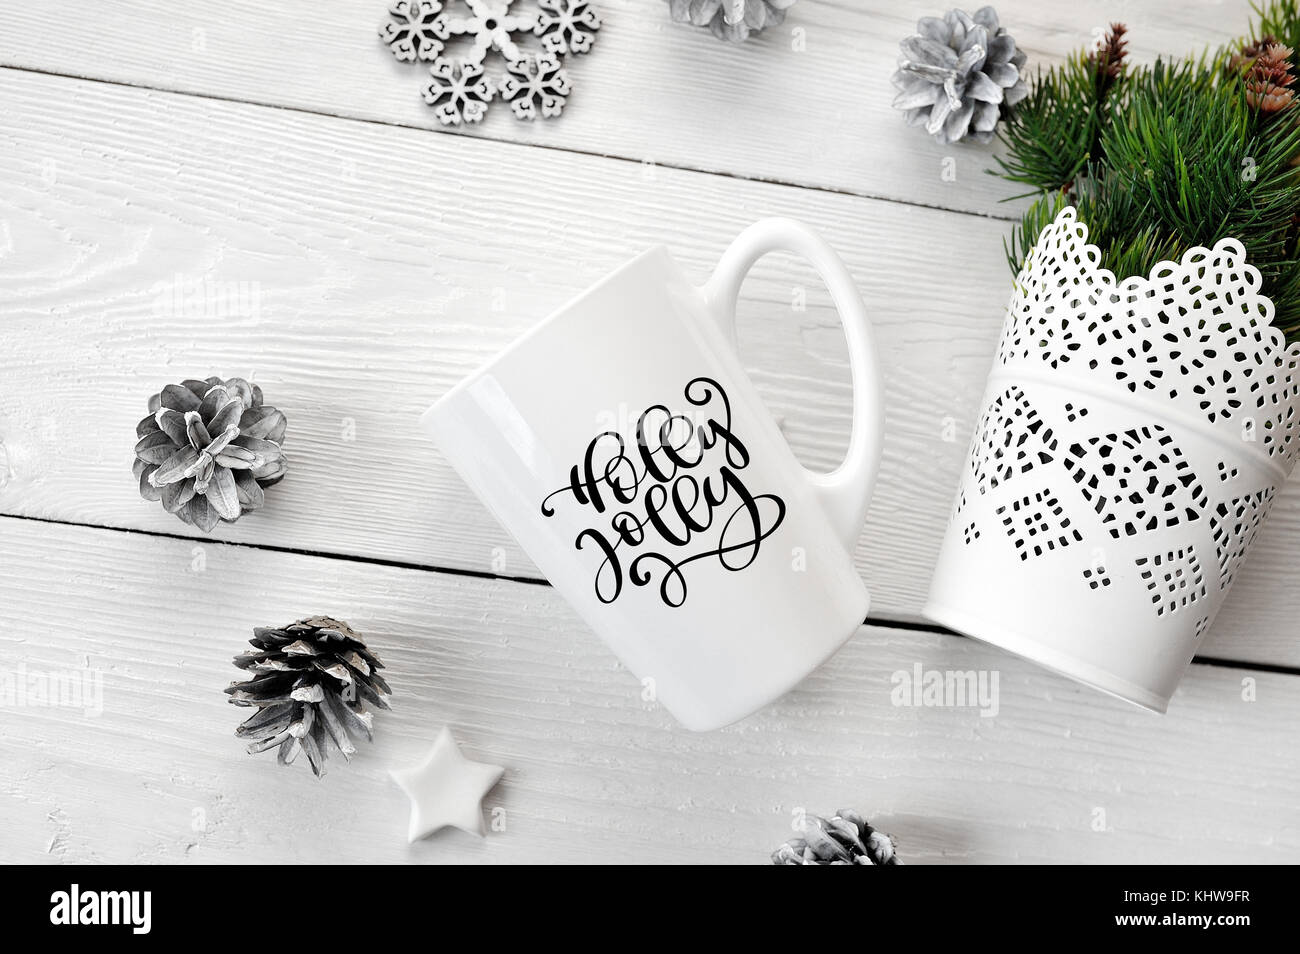 Testo di natale holly jolly su una tazza di bianco con decorazioni di Natale. flat laico, top view photo mockup Foto Stock